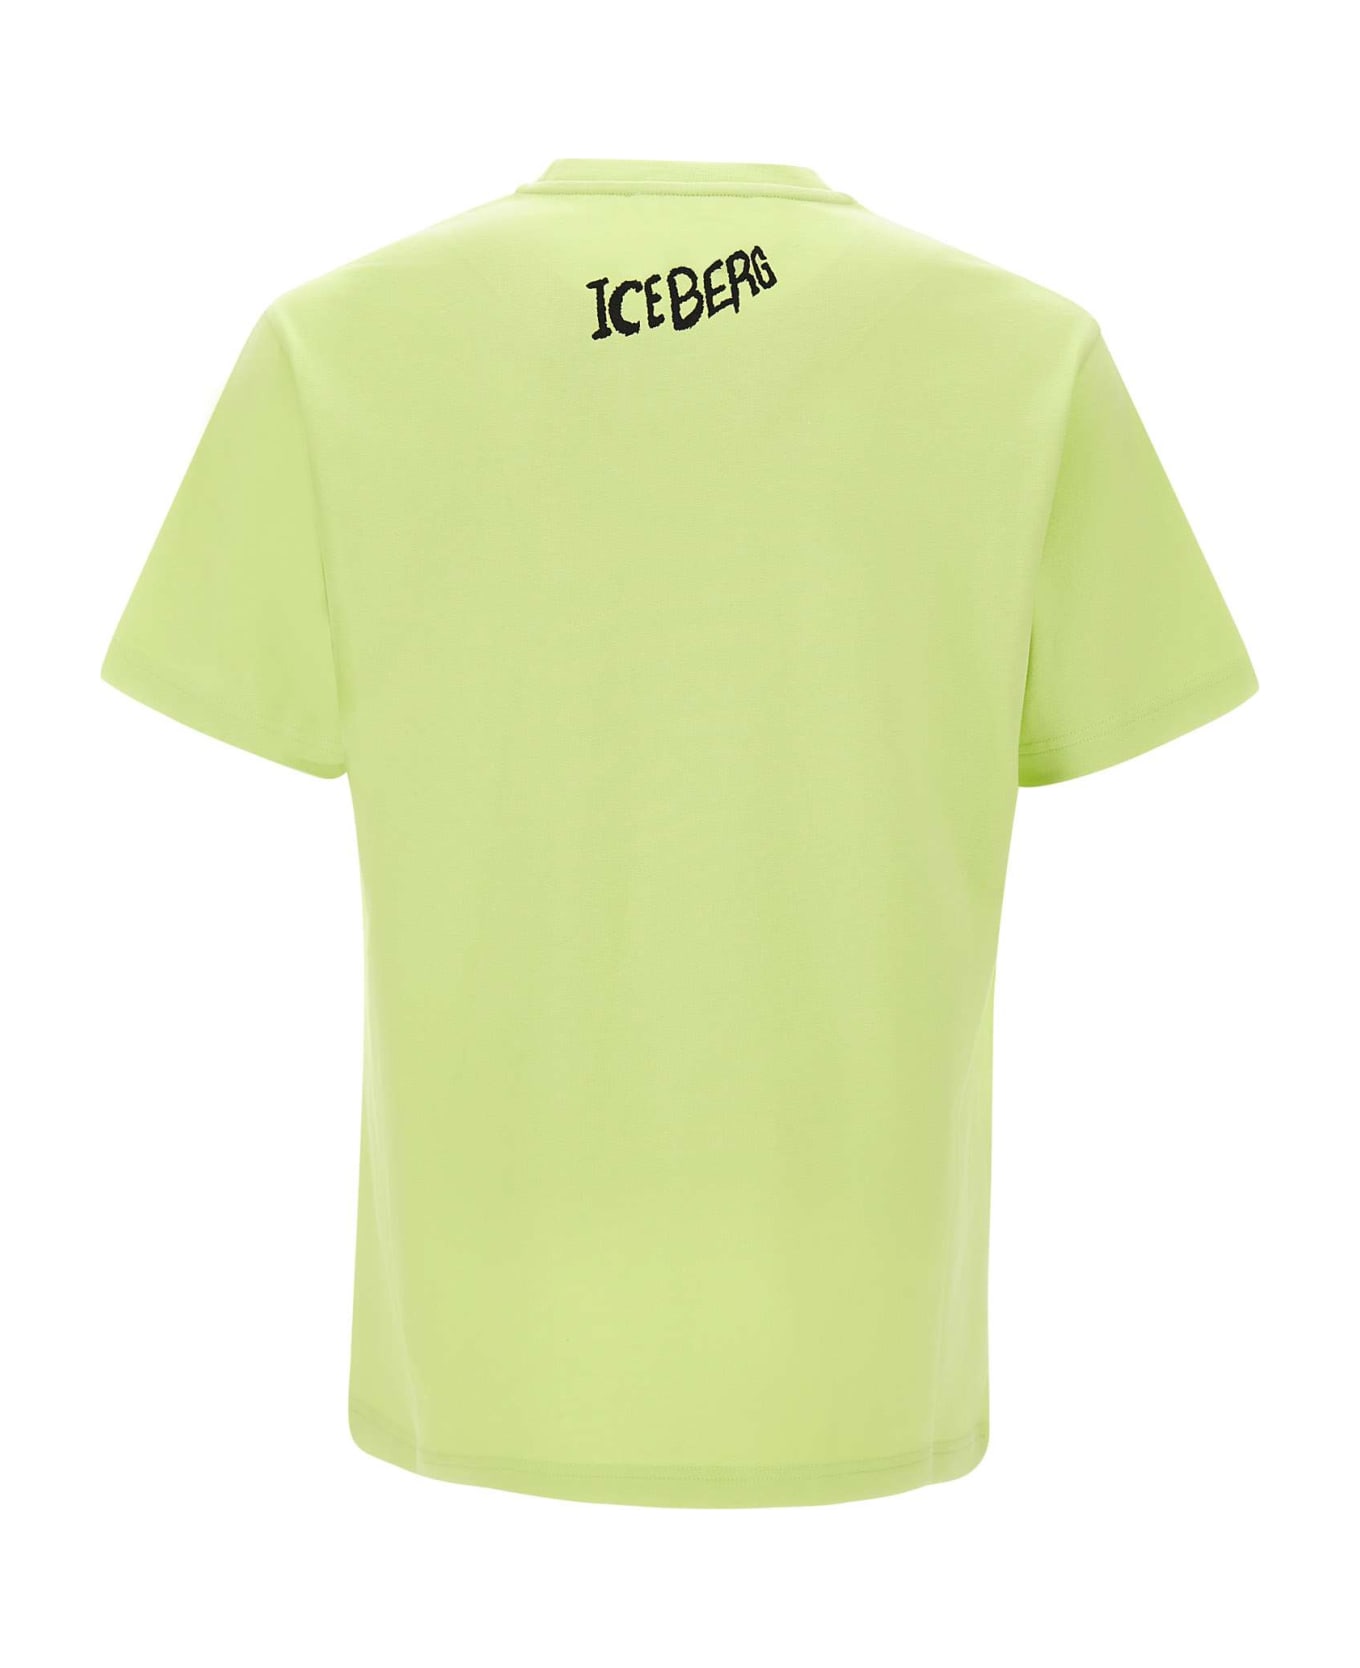 Iceberg Cotton T-shirt - YELLOW